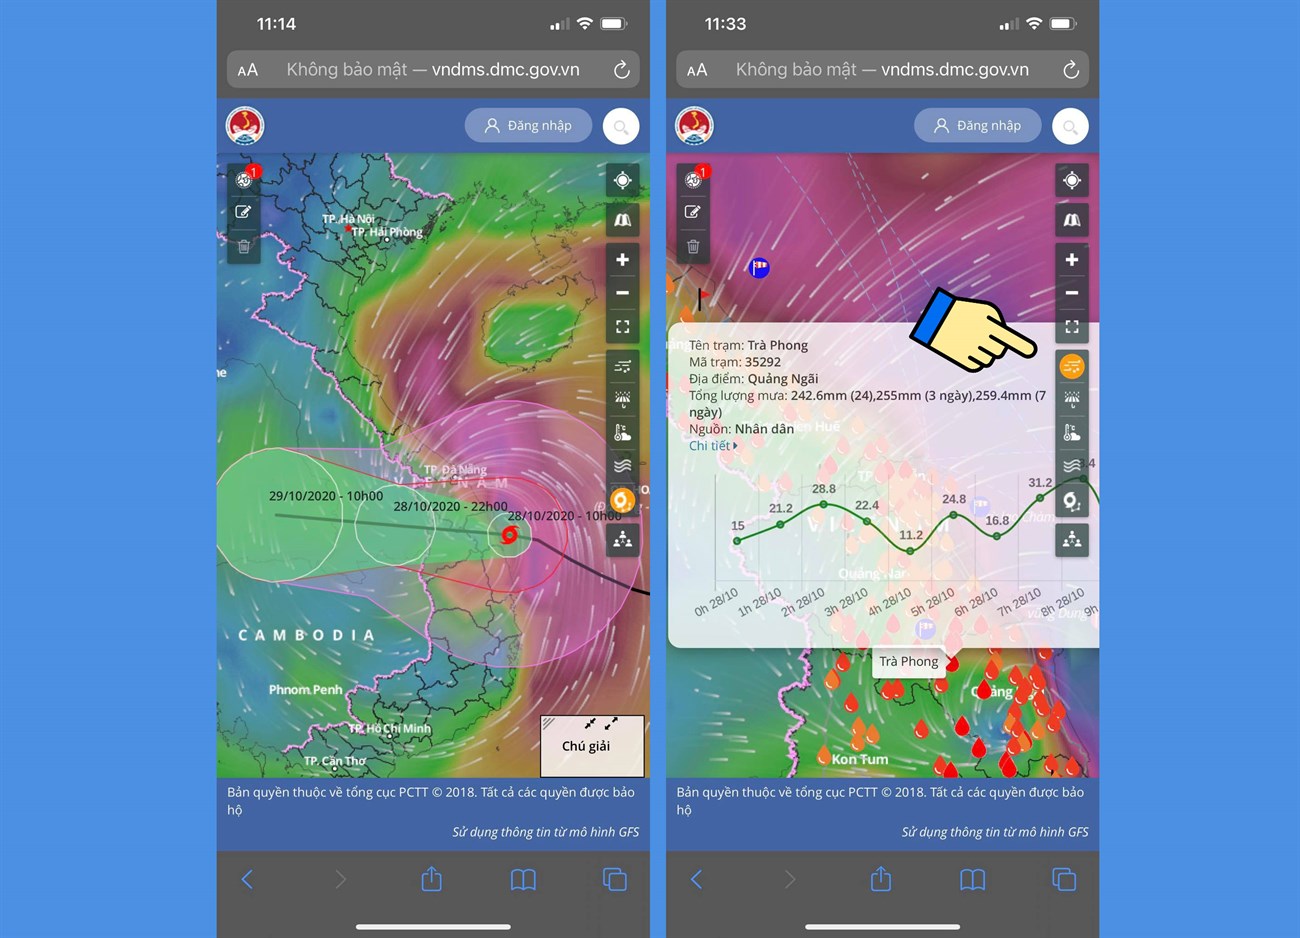 Bản đồ dự báo thời tiết là công cụ hữu ích giúp bạn biết được thời tiết sắp tới ở khu vực của mình. Bạn có thể theo dõi các khối không khí lạnh, ấm áp và mưa để có được sự chuẩn bị tốt nhất cho những kế hoạch của mình. Hãy xem ngay hình ảnh liên quan để biết thêm chi tiết.